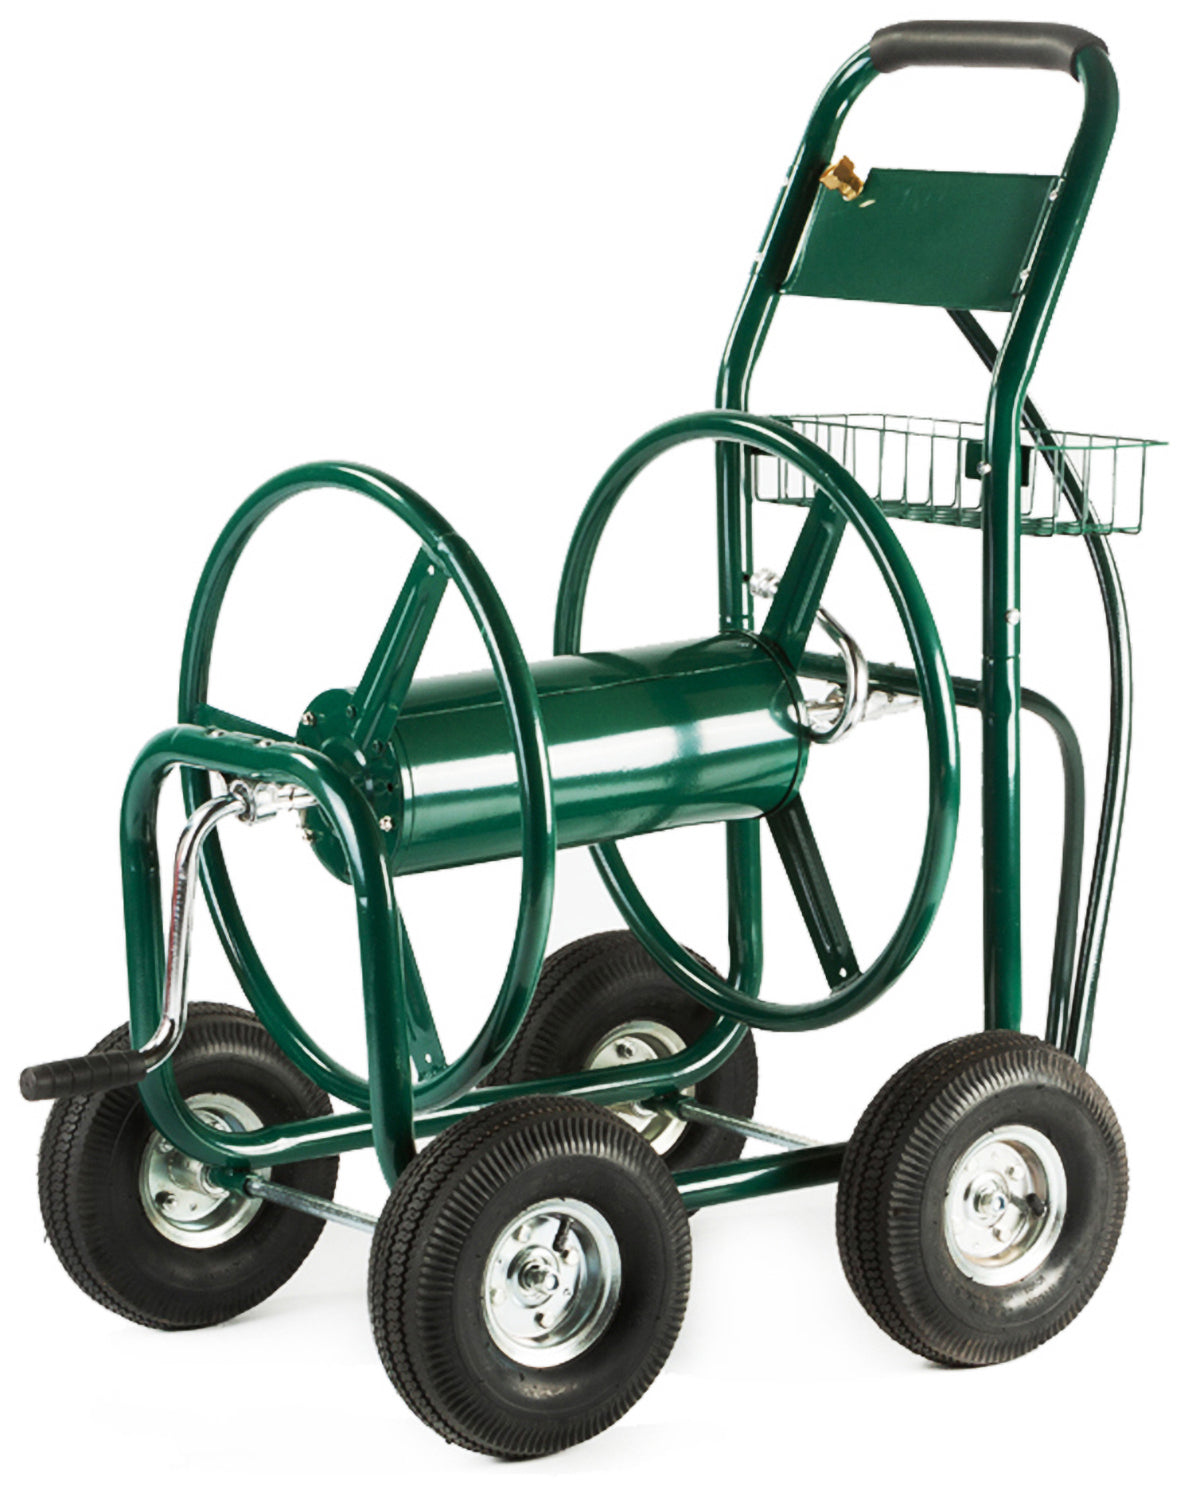 Hose Reel Cart Green Wheels 300'ft Capacity Outdoor Patio Garden Reel Holder